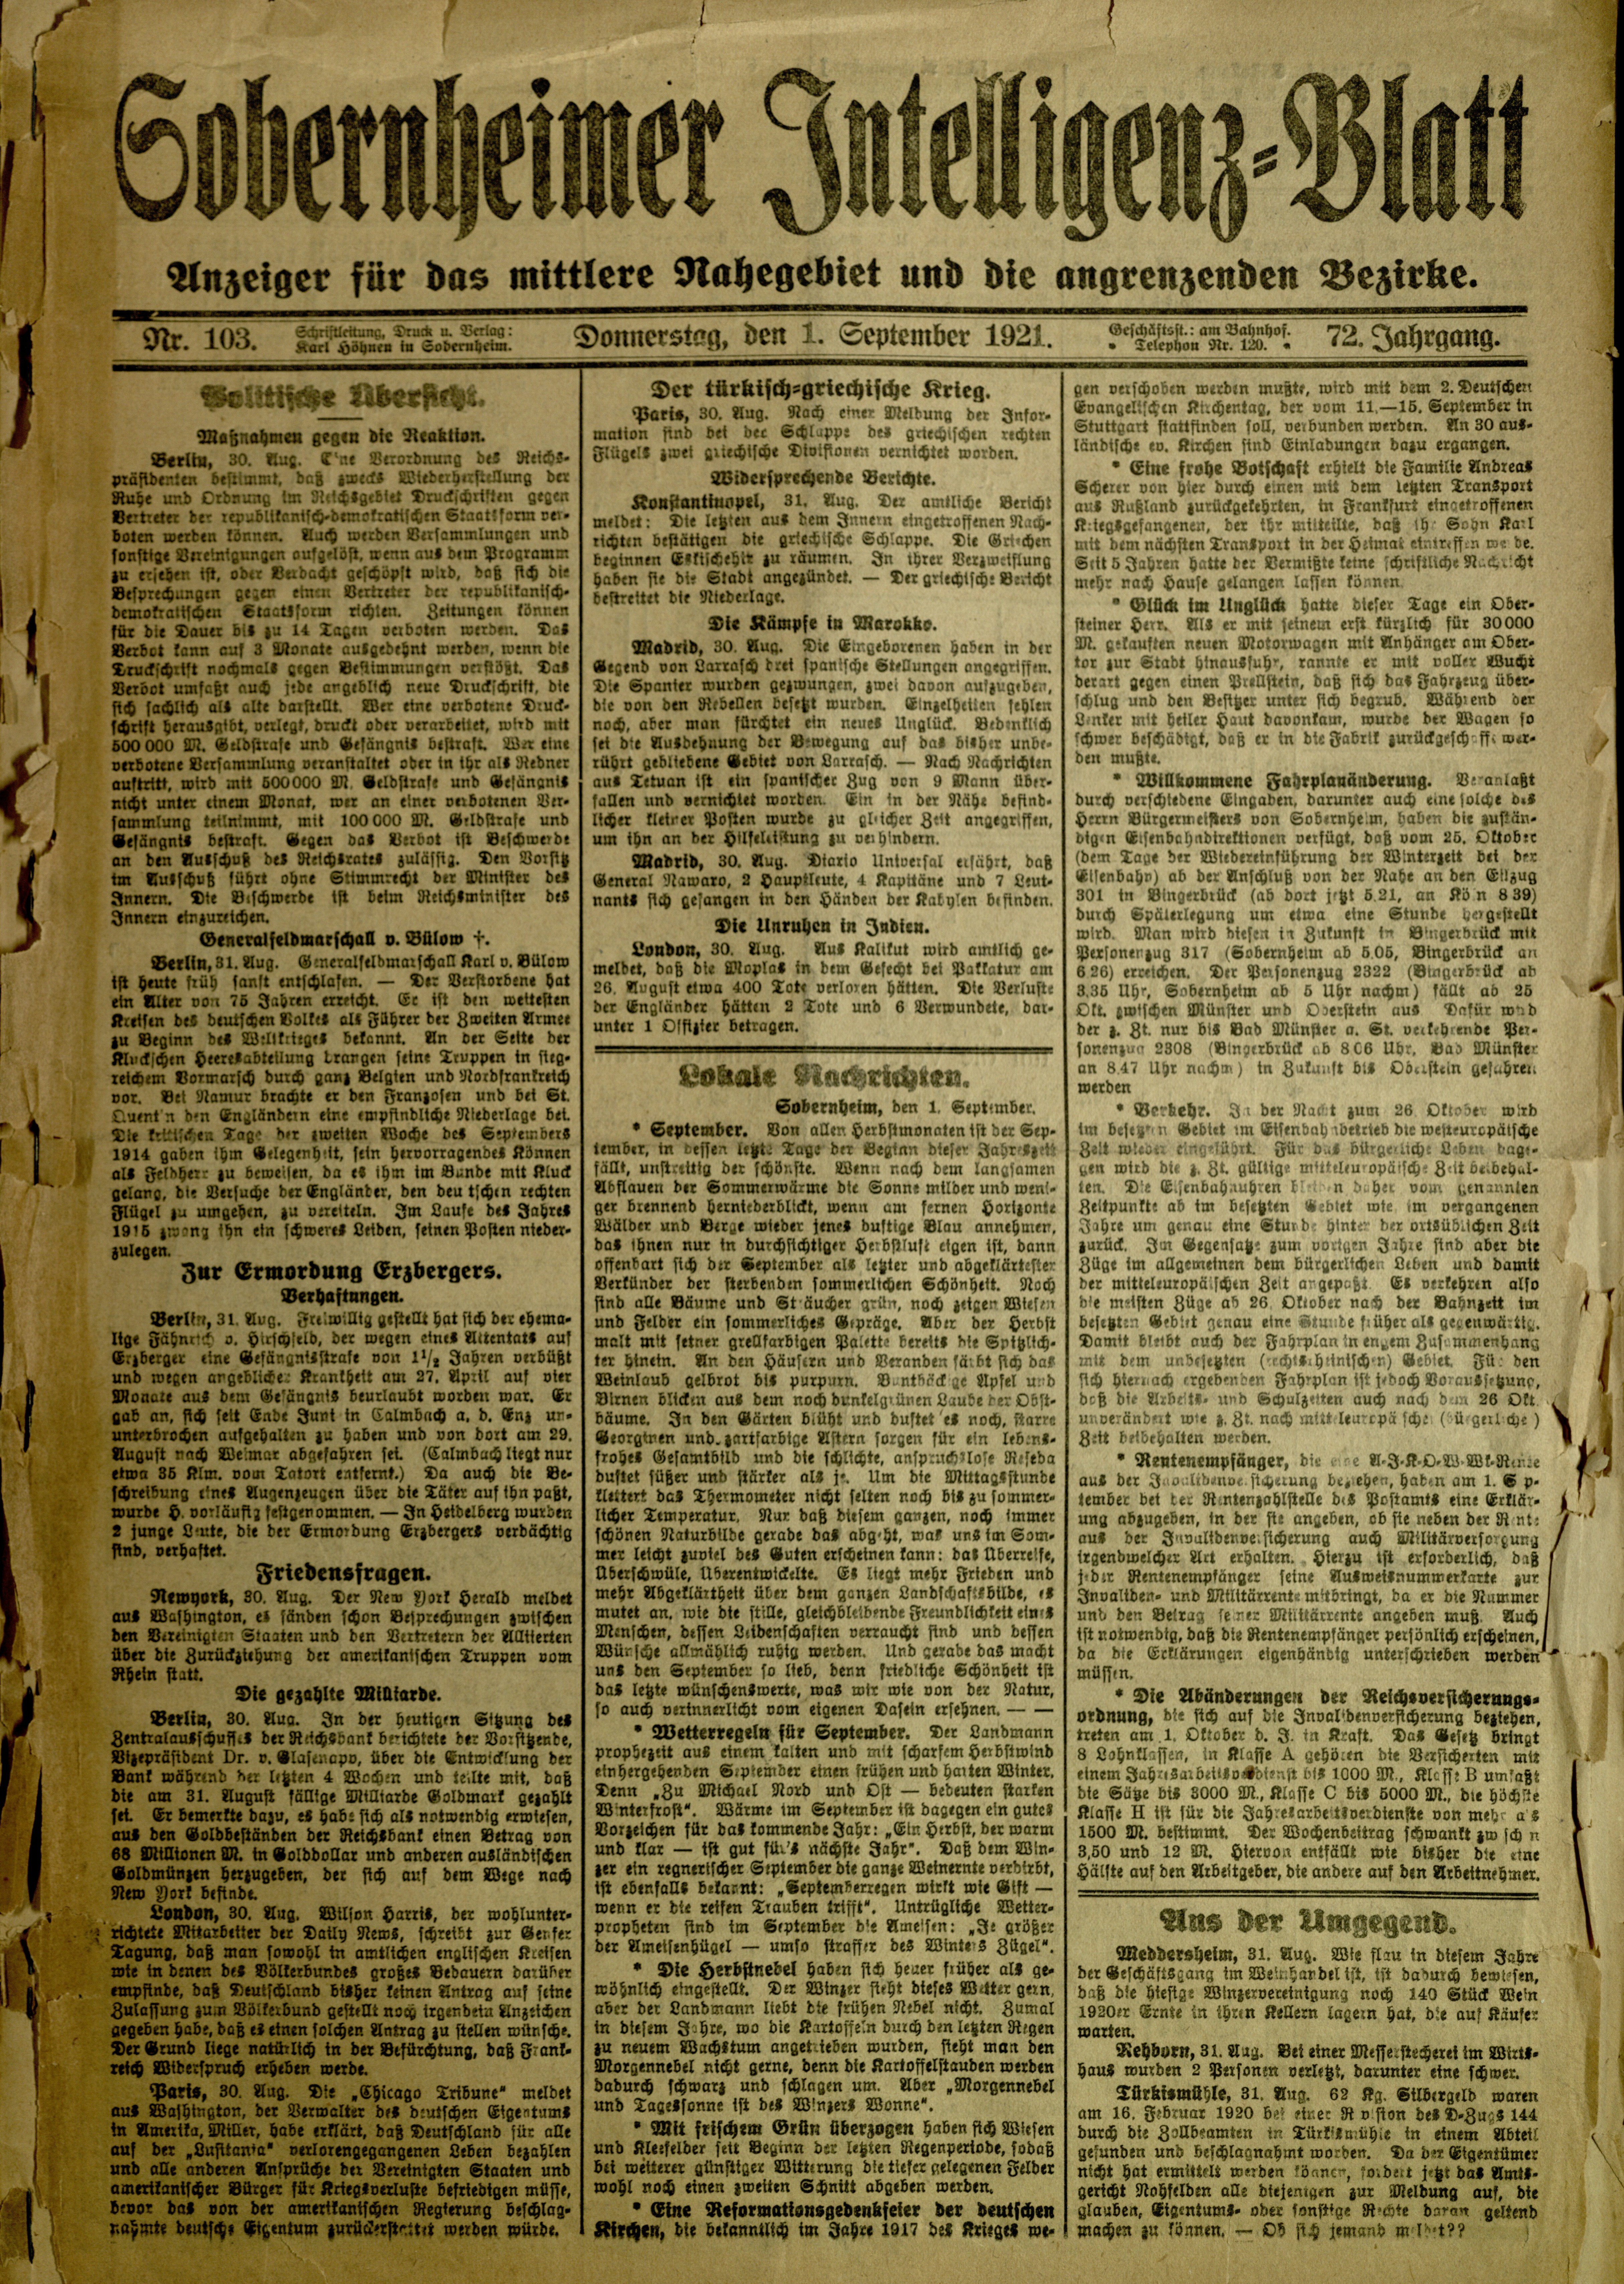 Zeitung: Sobernheimer Intelligenzblatt; September 1921, Jg. 72 Nr. 103 (Heimatmuseum Bad Sobernheim CC BY-NC-SA)